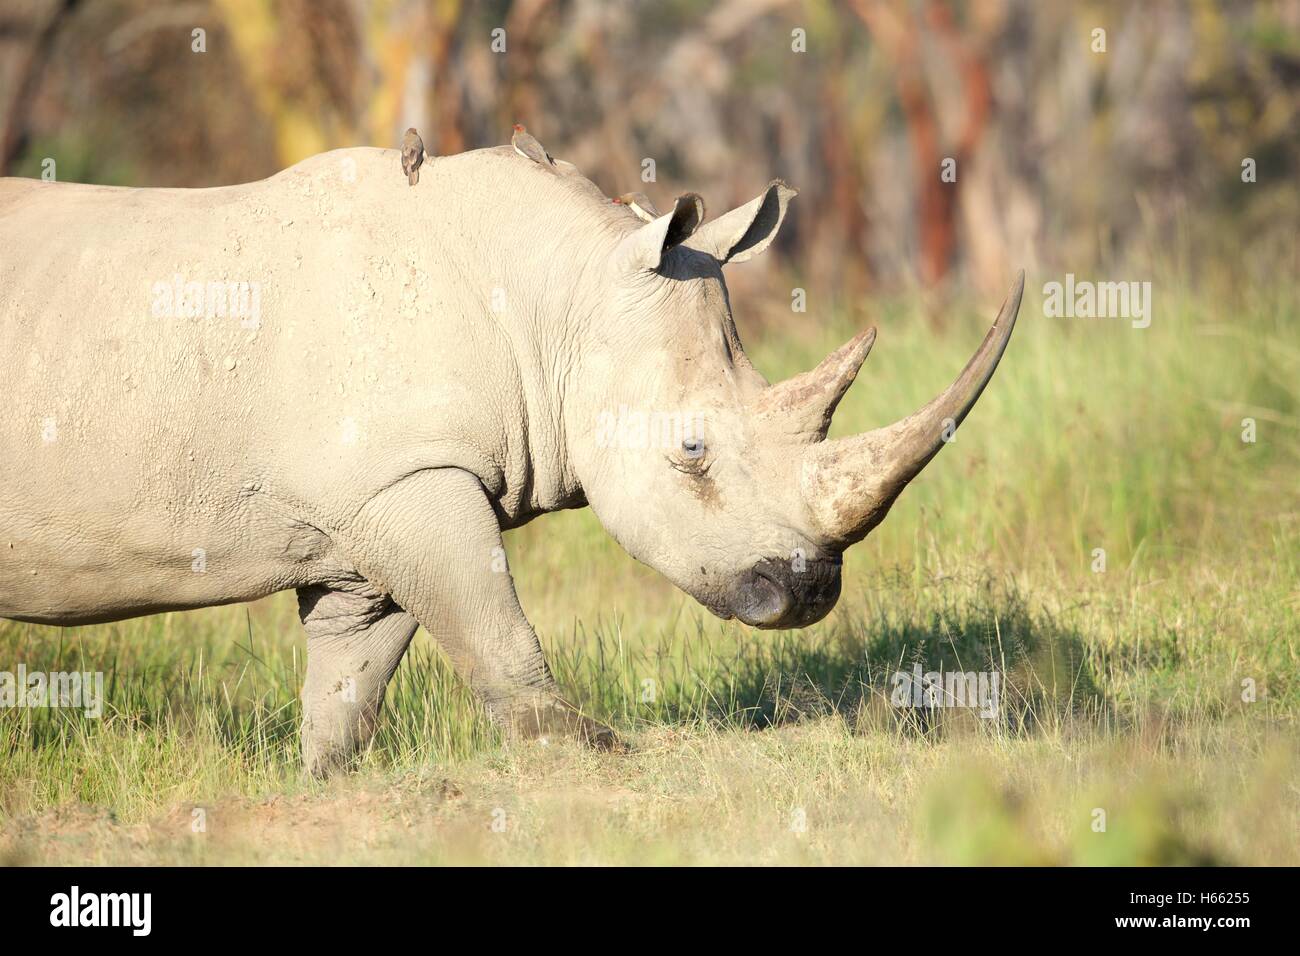 An endangered white rhino viewed on safari in Lake Nakuru, Kenya Stock Photo